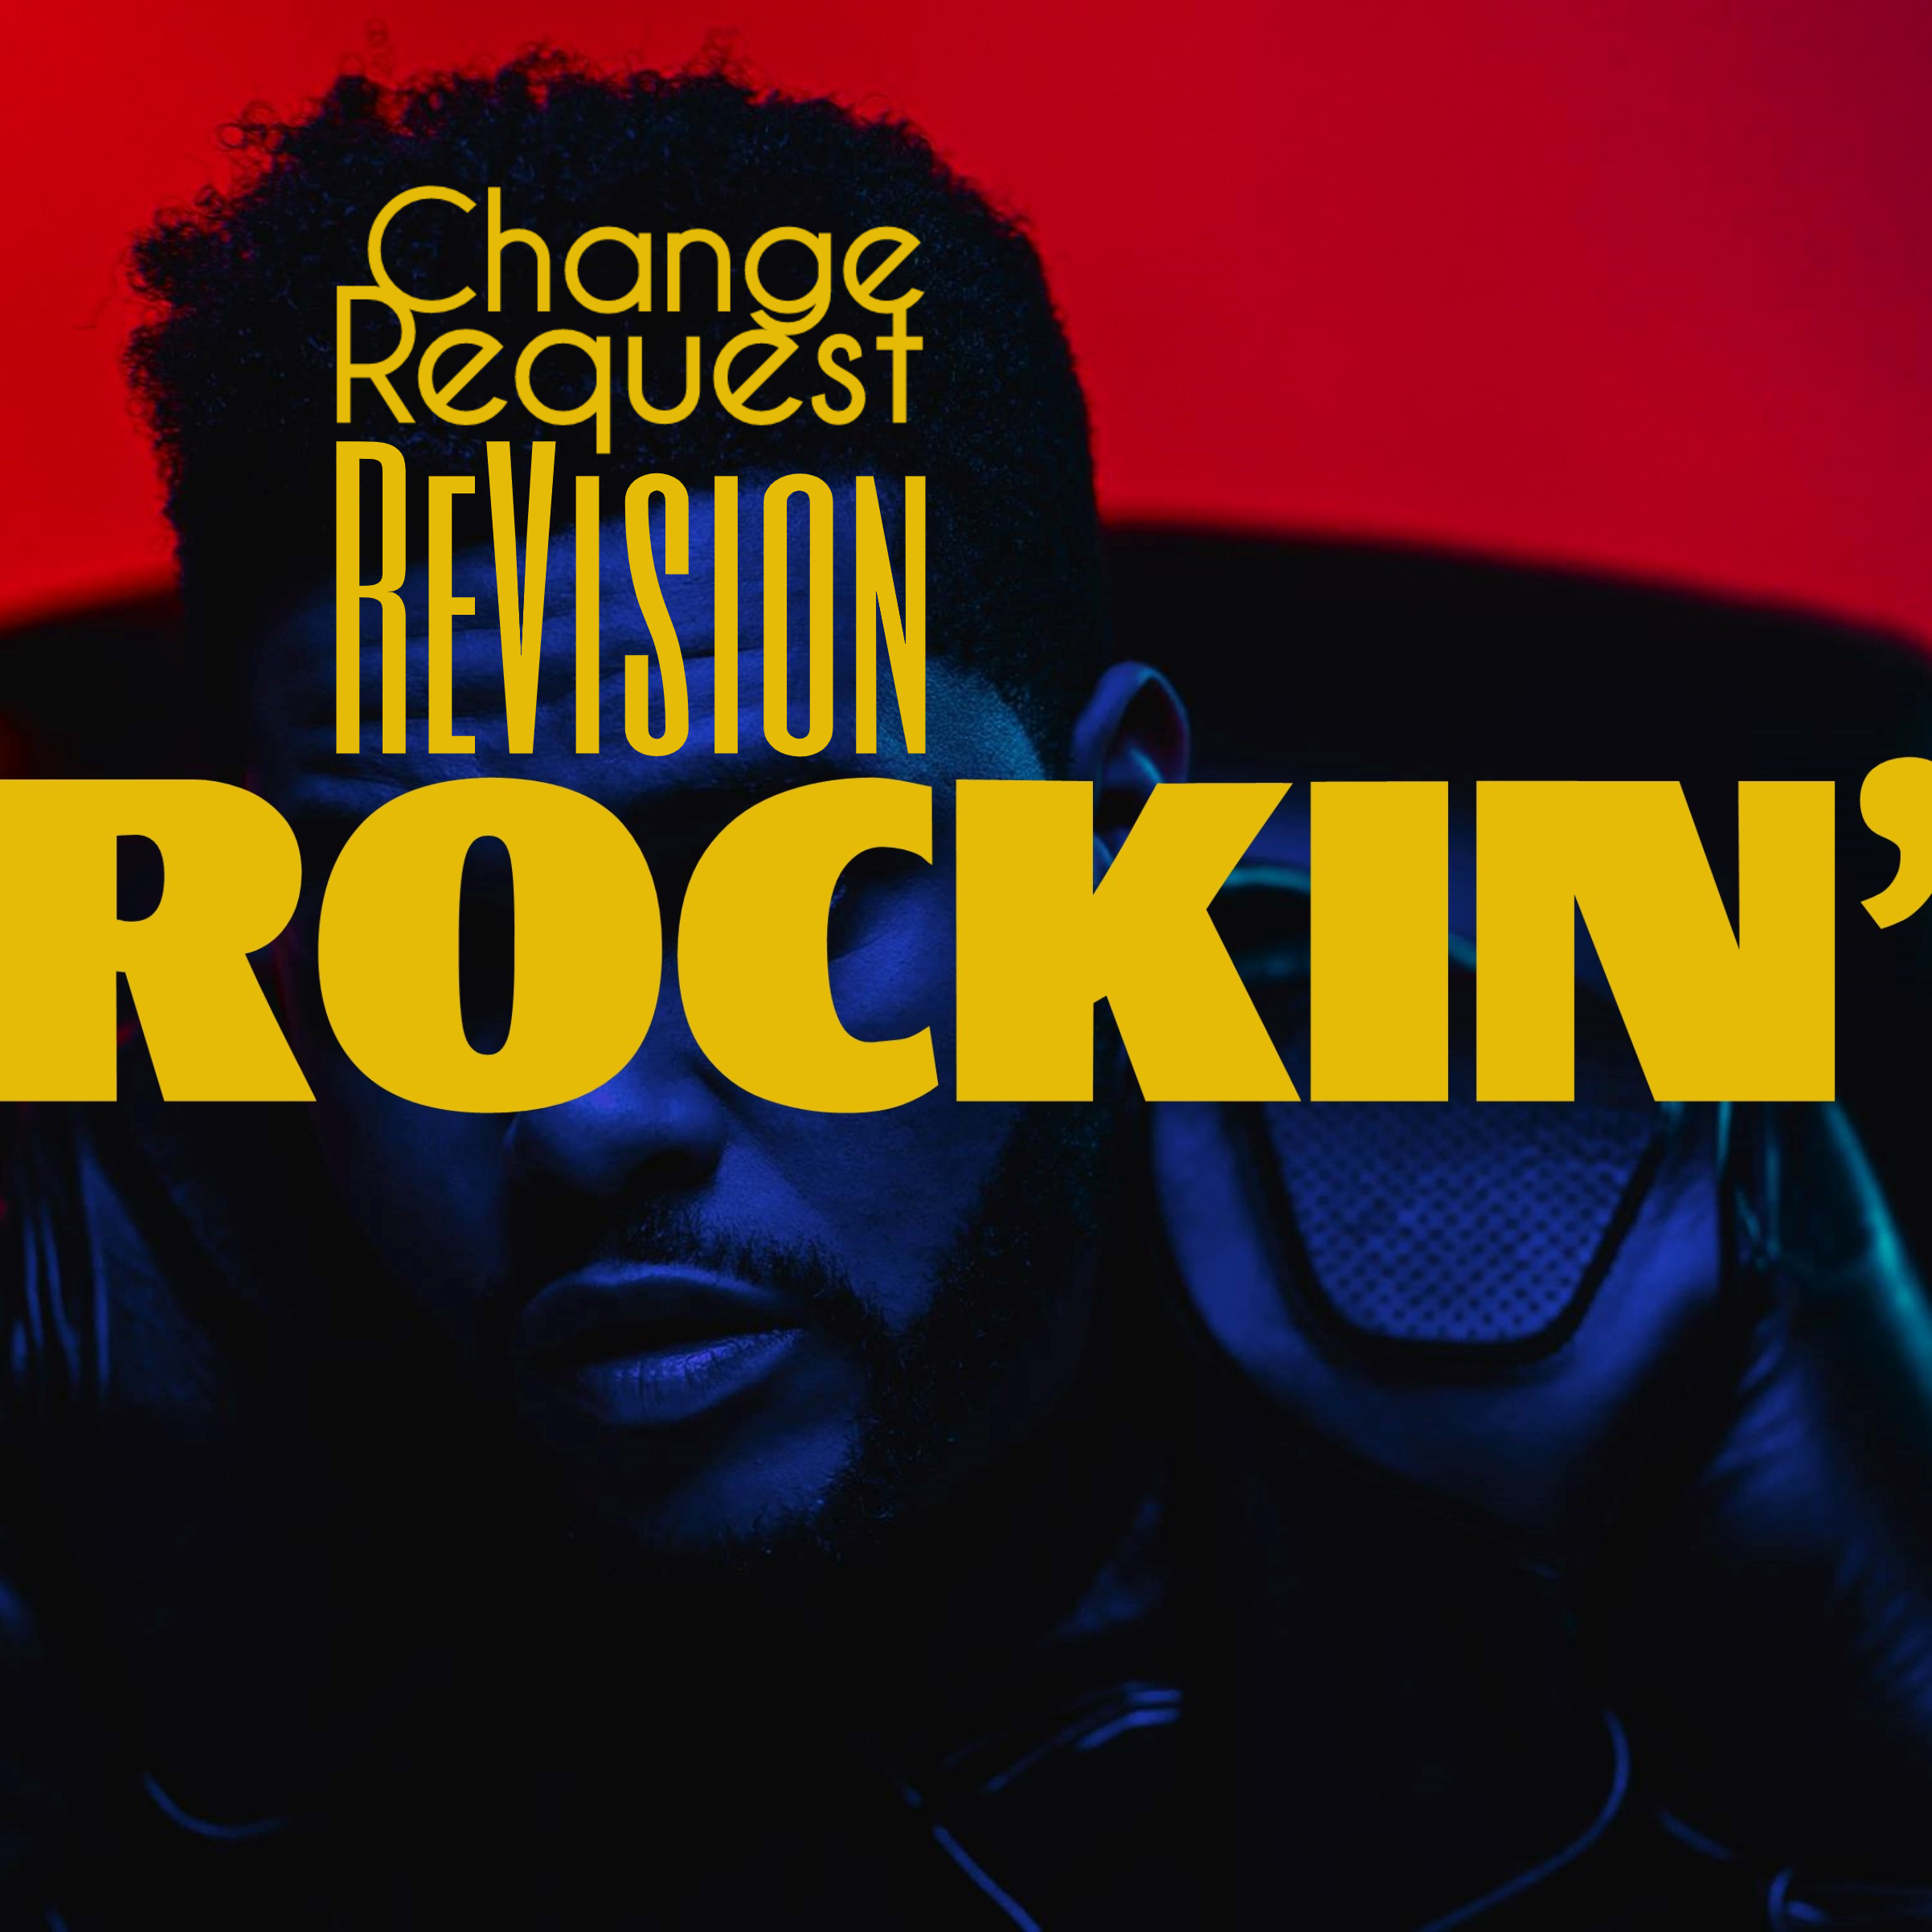 Rockin’ (Change Request ReVision)